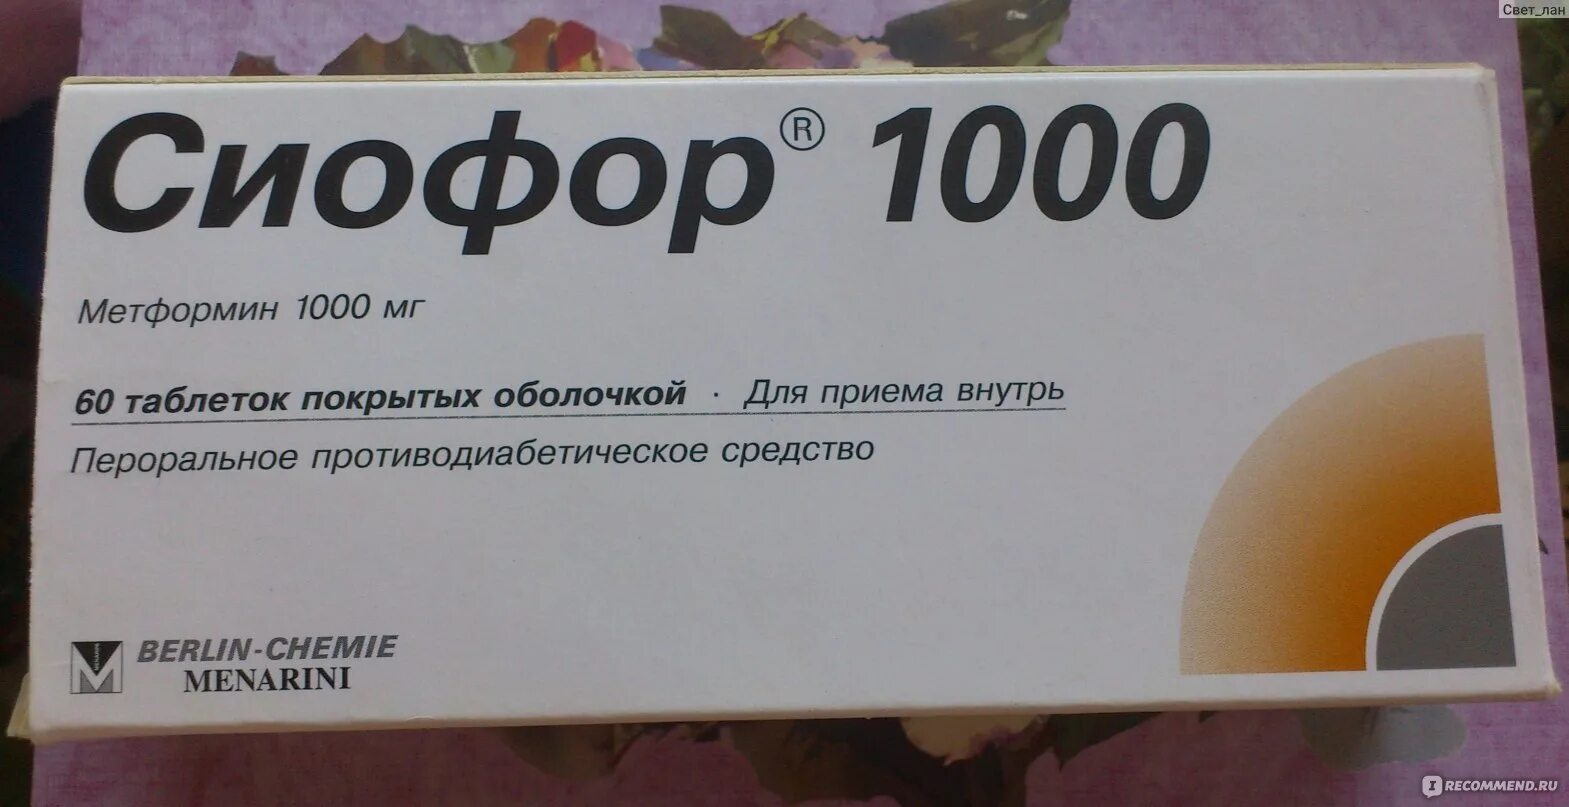 Сиофор инструкция. Таблетки от сахара сиофор 1000. Метформин сиофор 1000. Сиофор 1000 производитель. Метформин сиофор 1000мг.